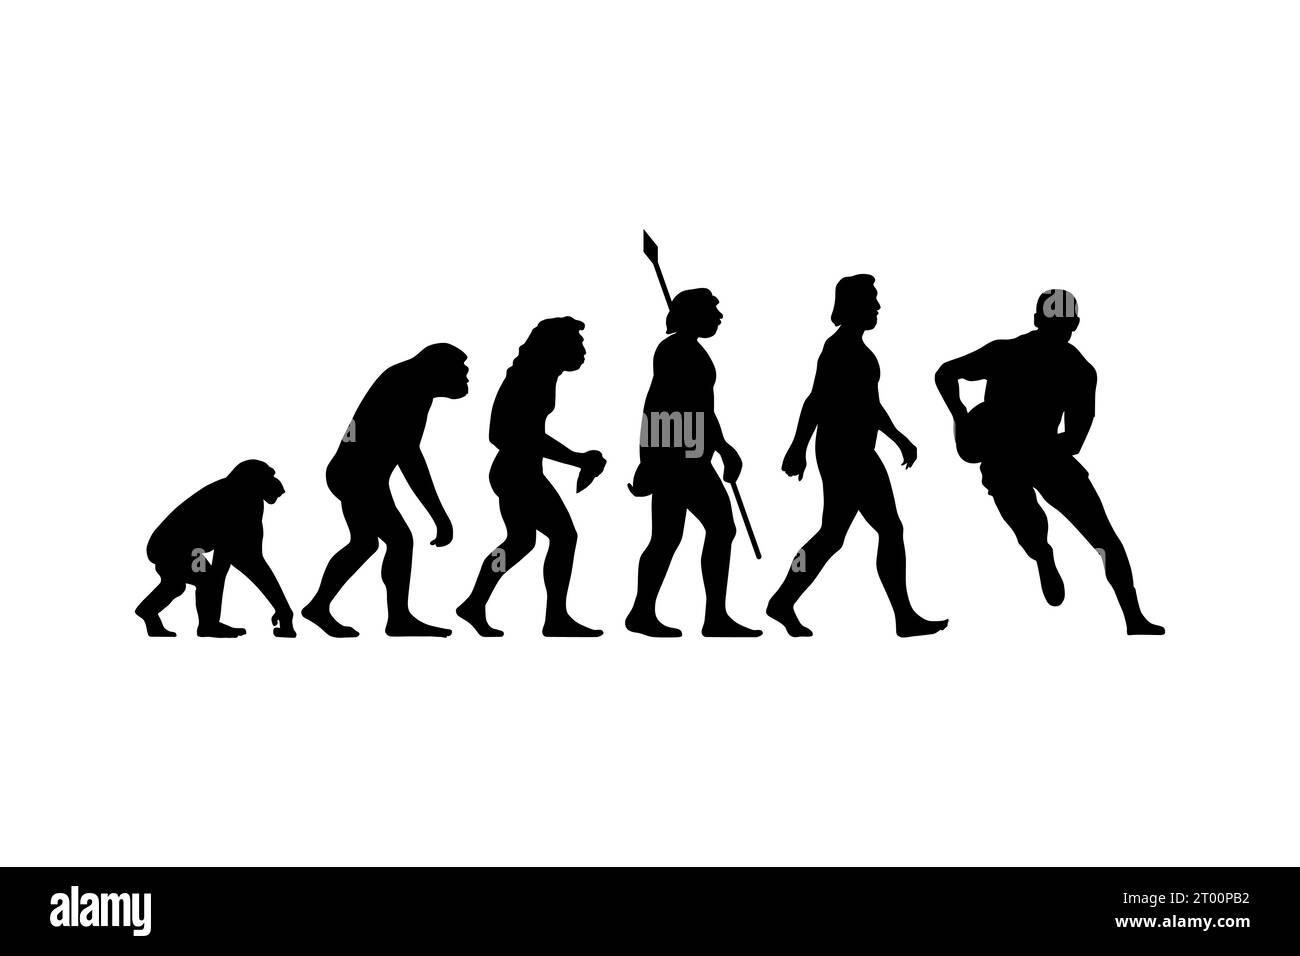 La théorie de l'évolution de Charles Darwin peut être métaphoriquement appliquée à divers aspects de la culture et des activités humaines, y compris des sports comme le rugby Illustration de Vecteur